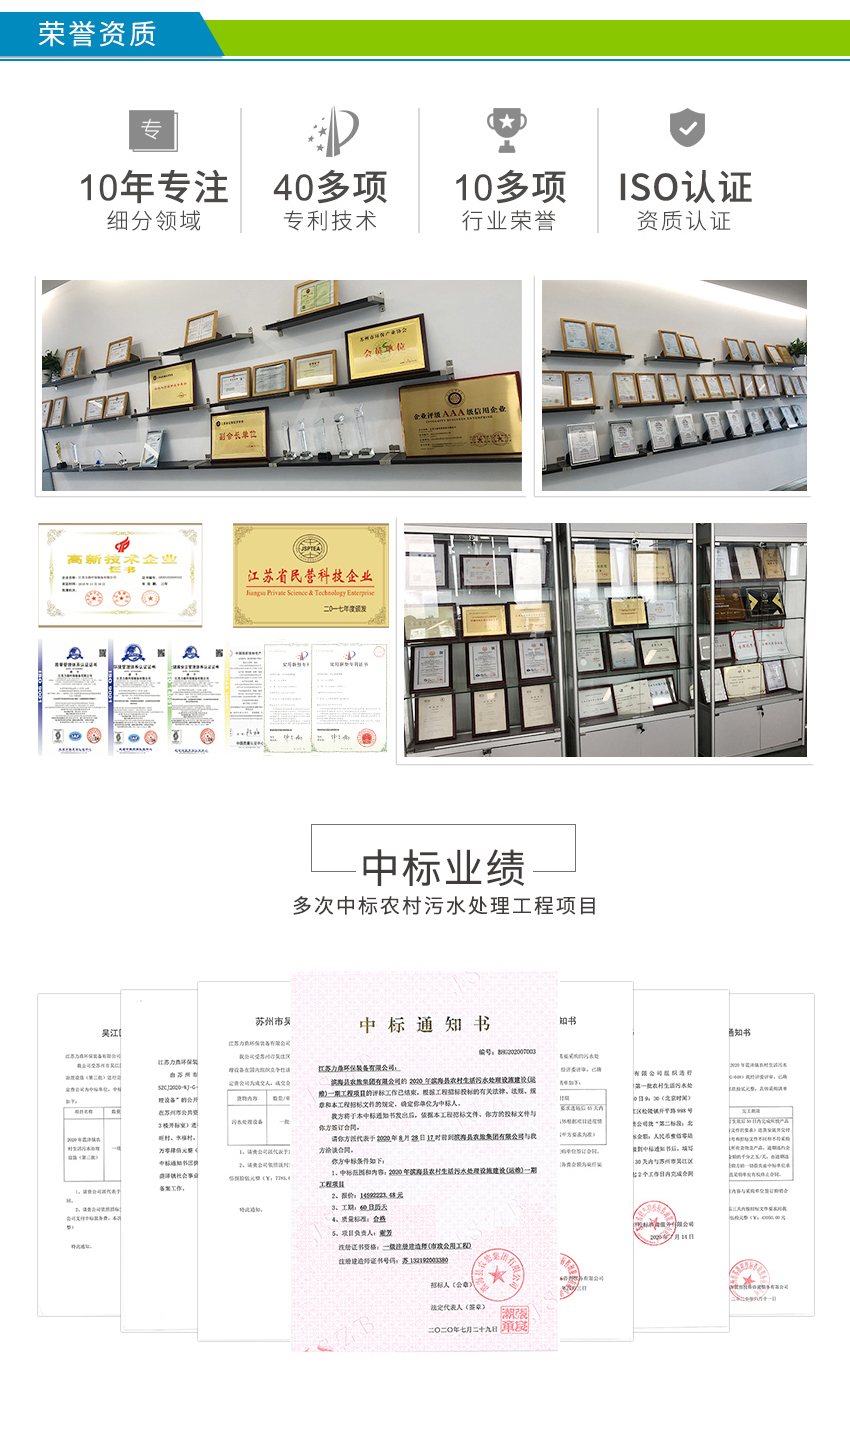 LD-SC农村必威西汉姆网页版
荣获多项专利资质认证